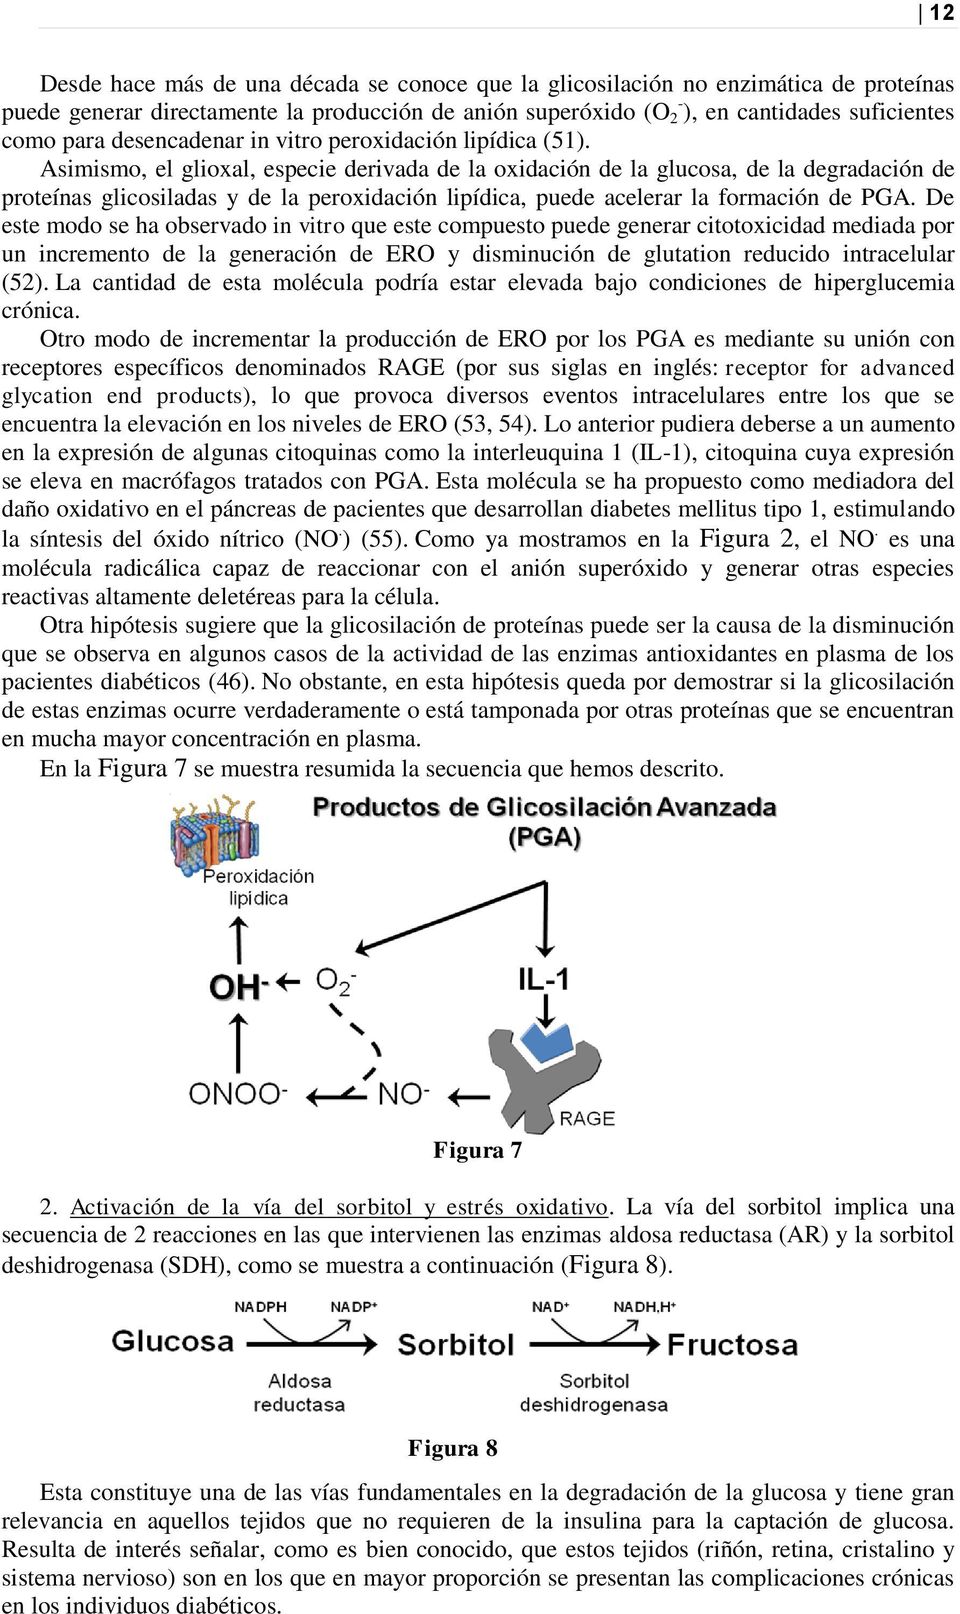 Asimismo, el glioxal, especie derivada de la oxidación de la glucosa, de la degradación de proteínas glicosiladas y de la peroxidación lipídica, puede acelerar la formación de PGA.